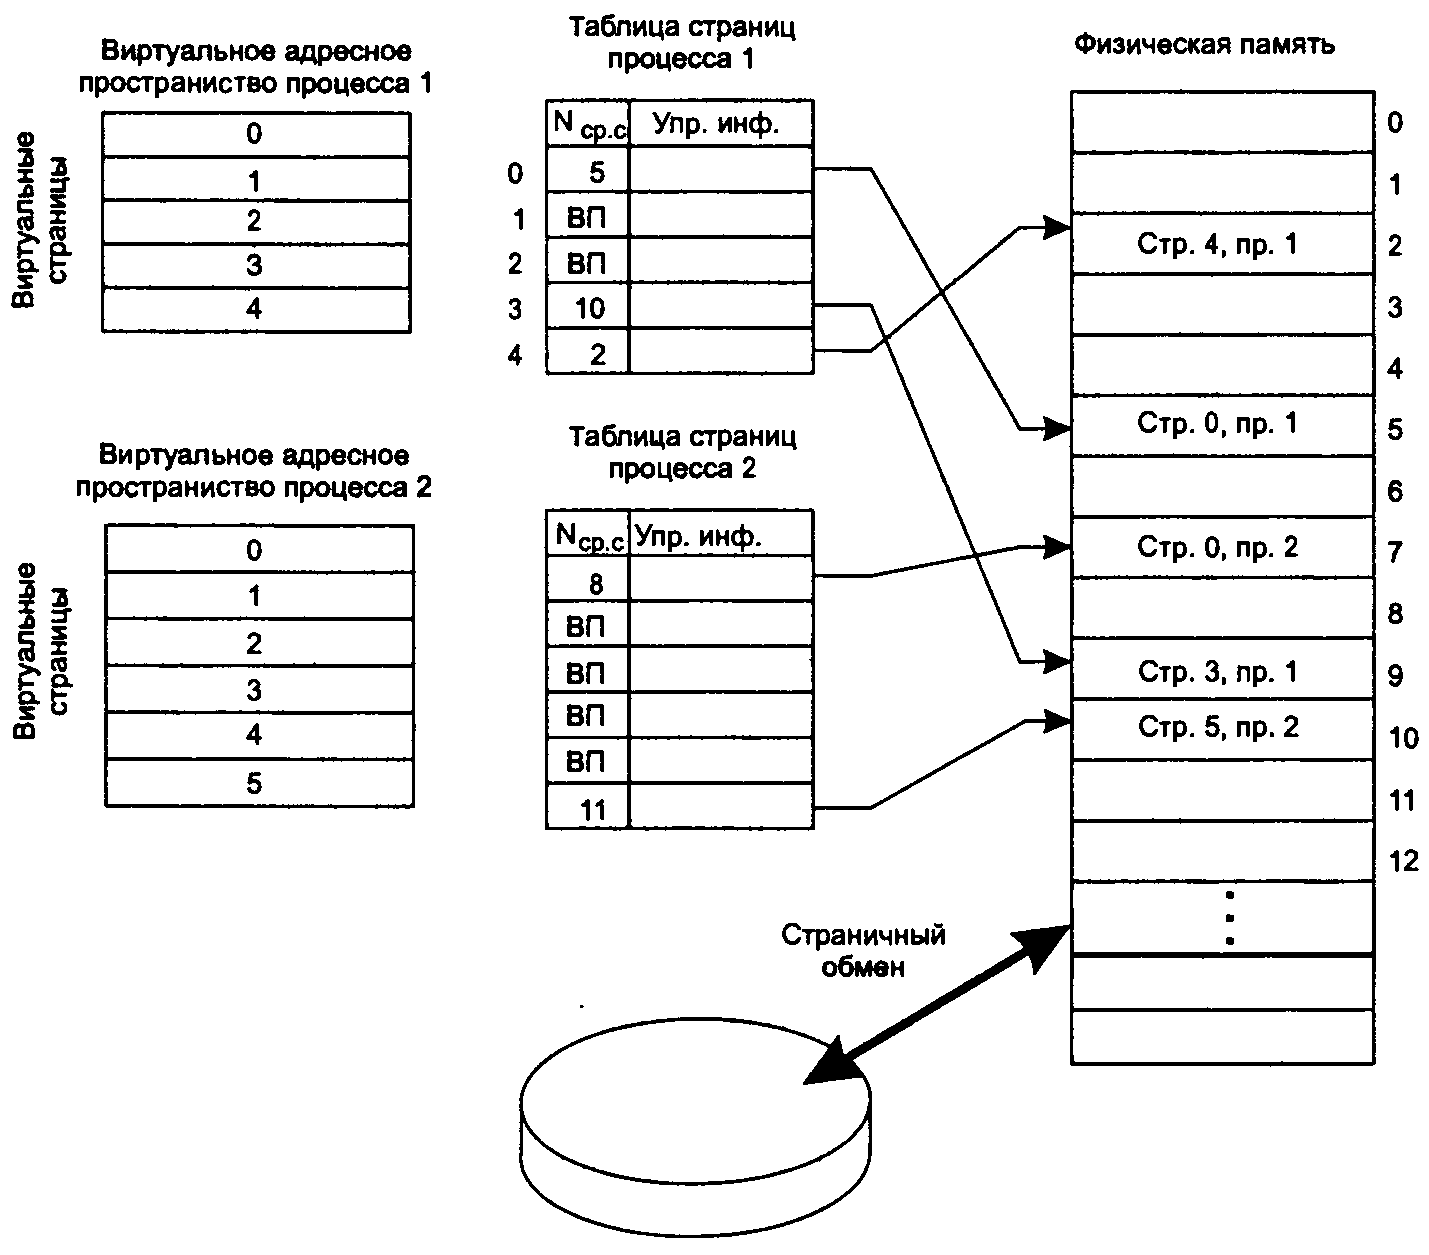 Физическая страница памяти. Страничная организация виртуальной памяти. Таблица страниц. Страничное распределение памяти. Структура виртуальной памяти схема. Распределение адресного пространства оперативной памяти схема.